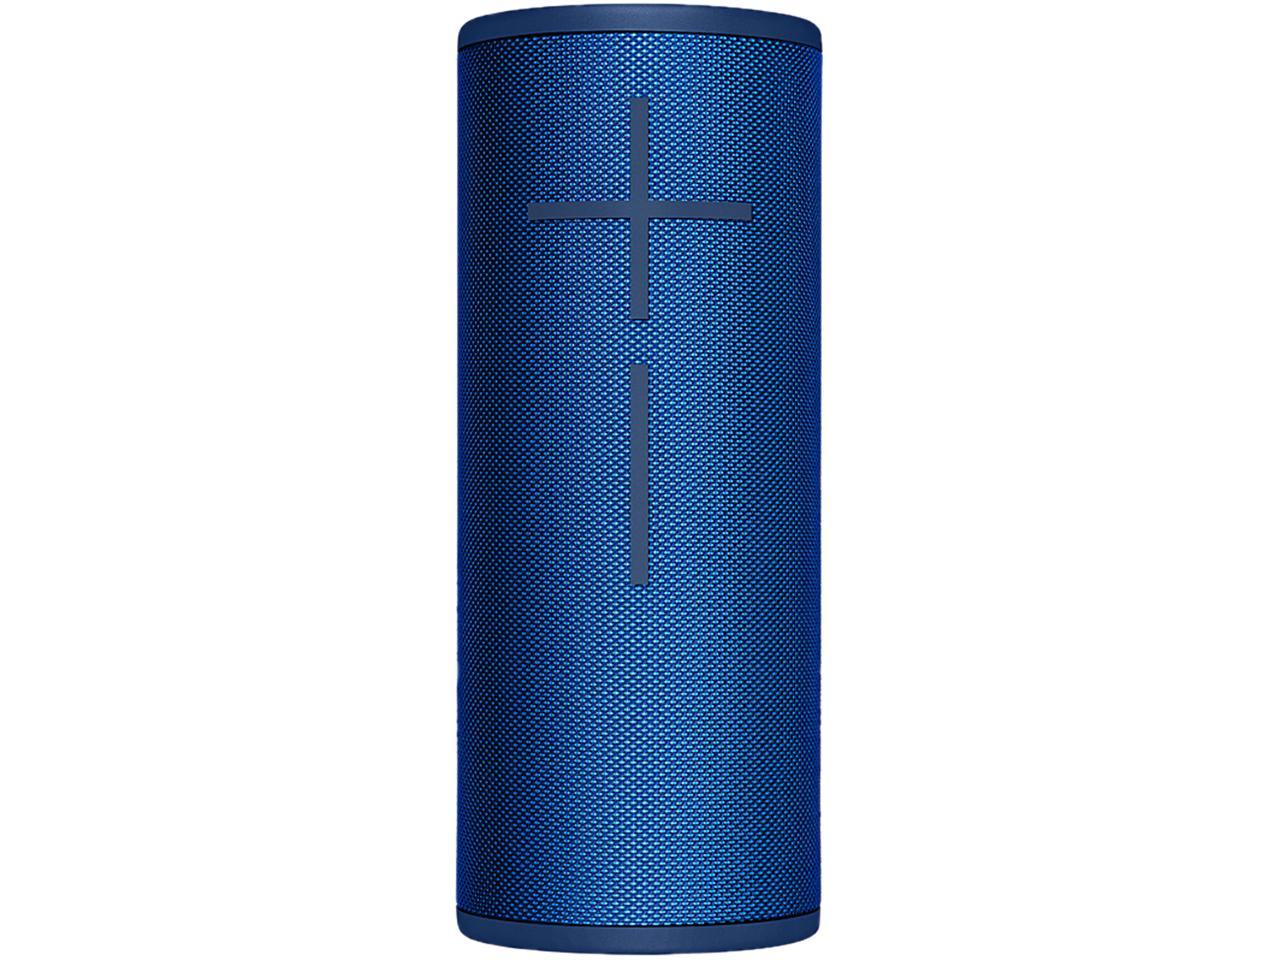 Ultimate Ears Boom 3 Portable Waterproof Bluetooth Speaker - Lagoon Blue - image 1 of 2